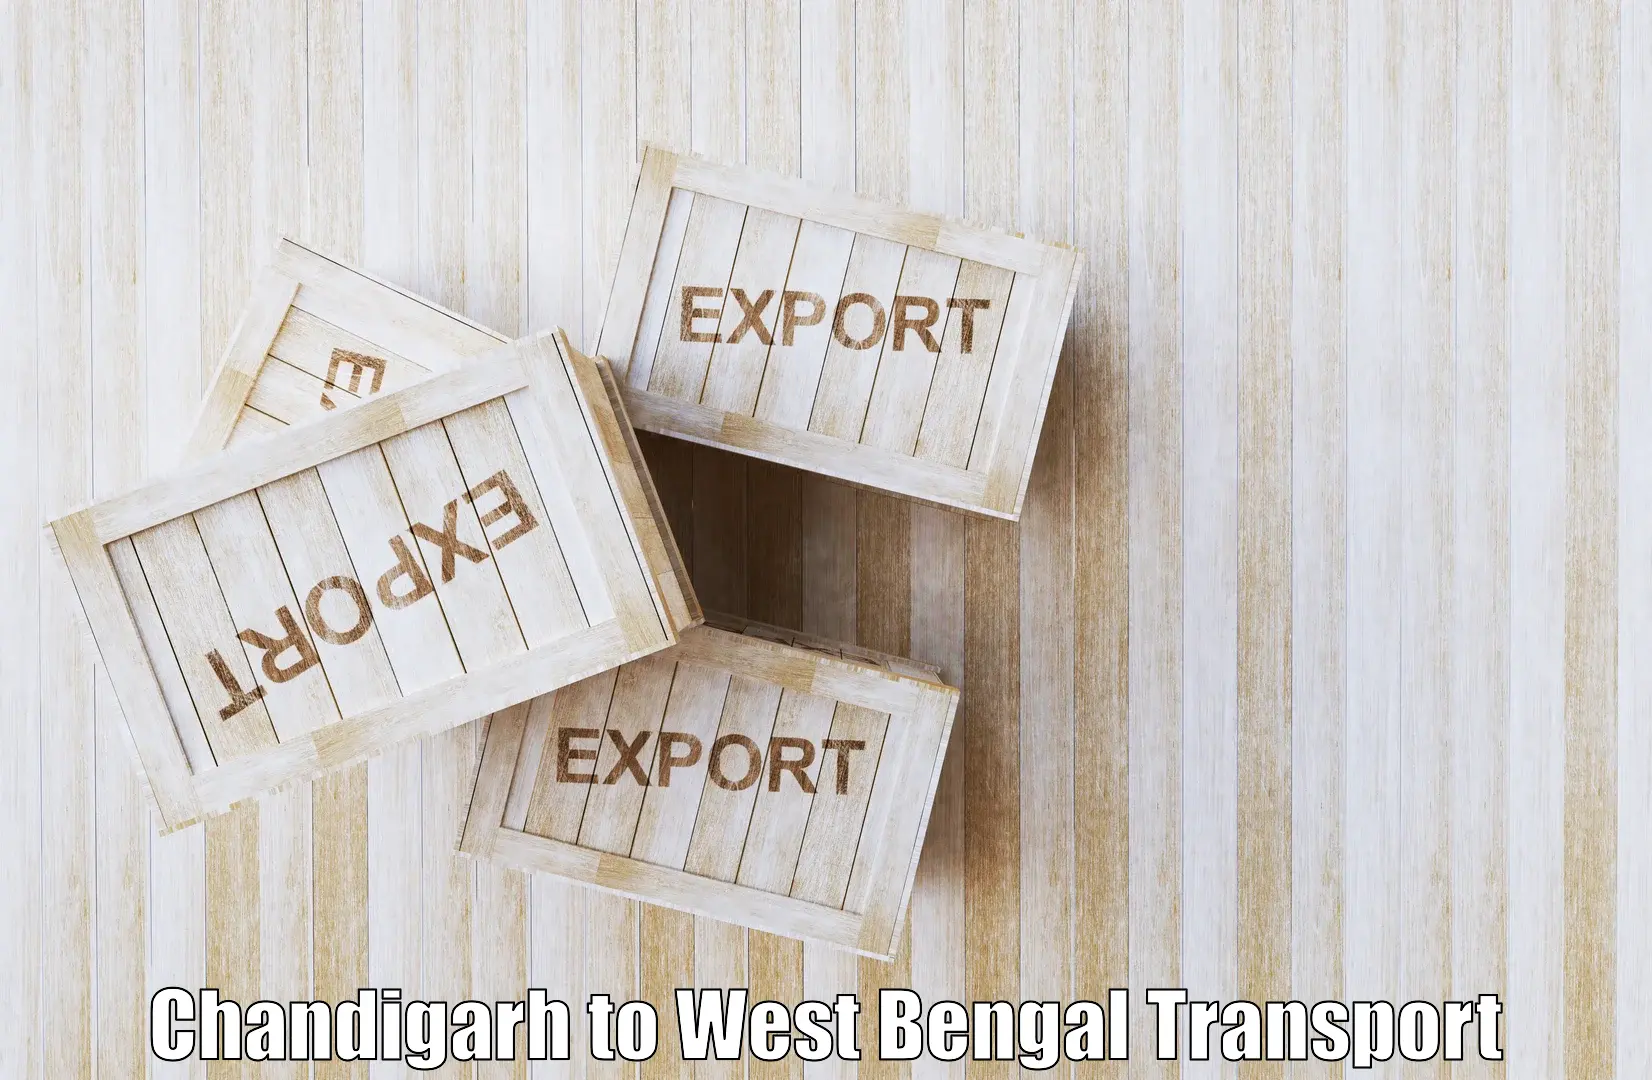 Interstate goods transport in Chandigarh to Dakshin Barasat